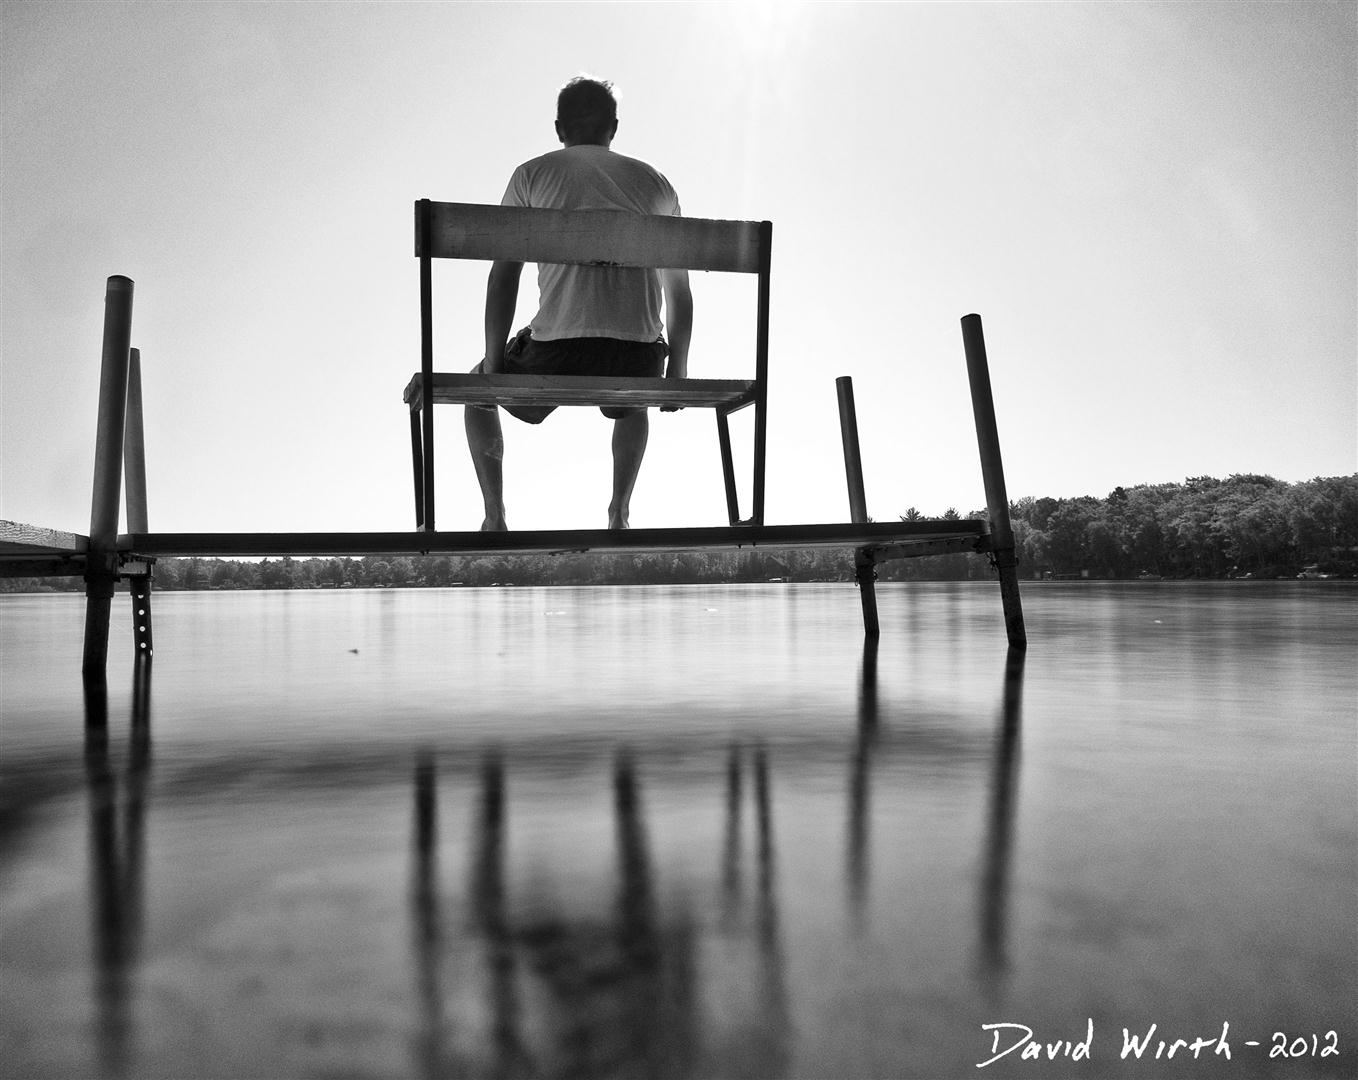 ND filter lake water, calm, dock, sitting